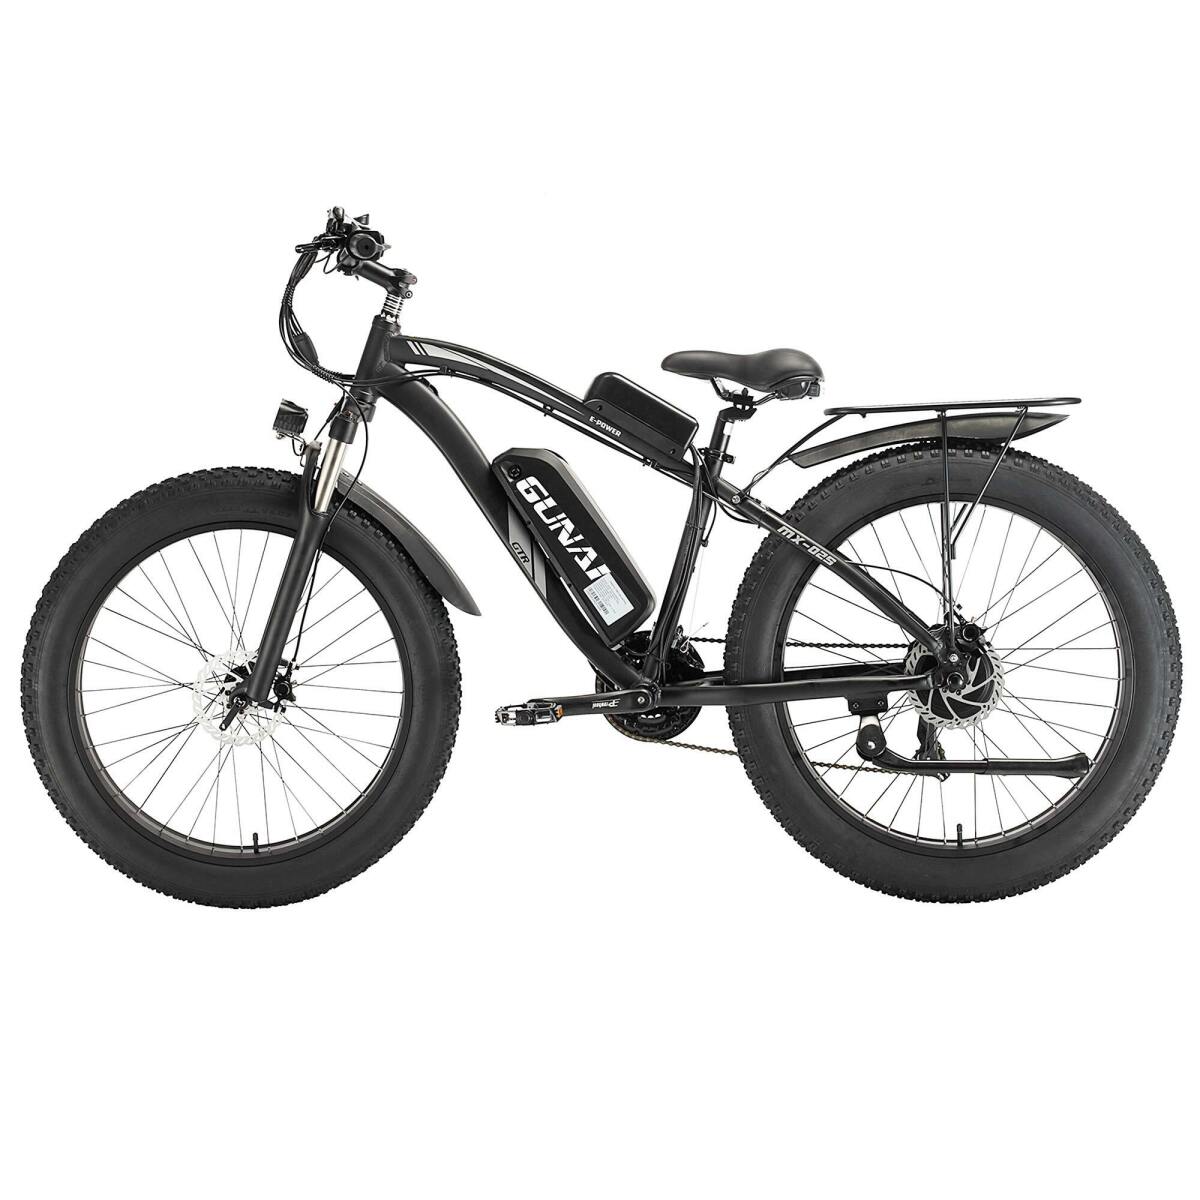 MX02S Vélo électrique Pneus 26 Fat Bike 1000W 17Ah 45 KM/h VTT Electrique Noir